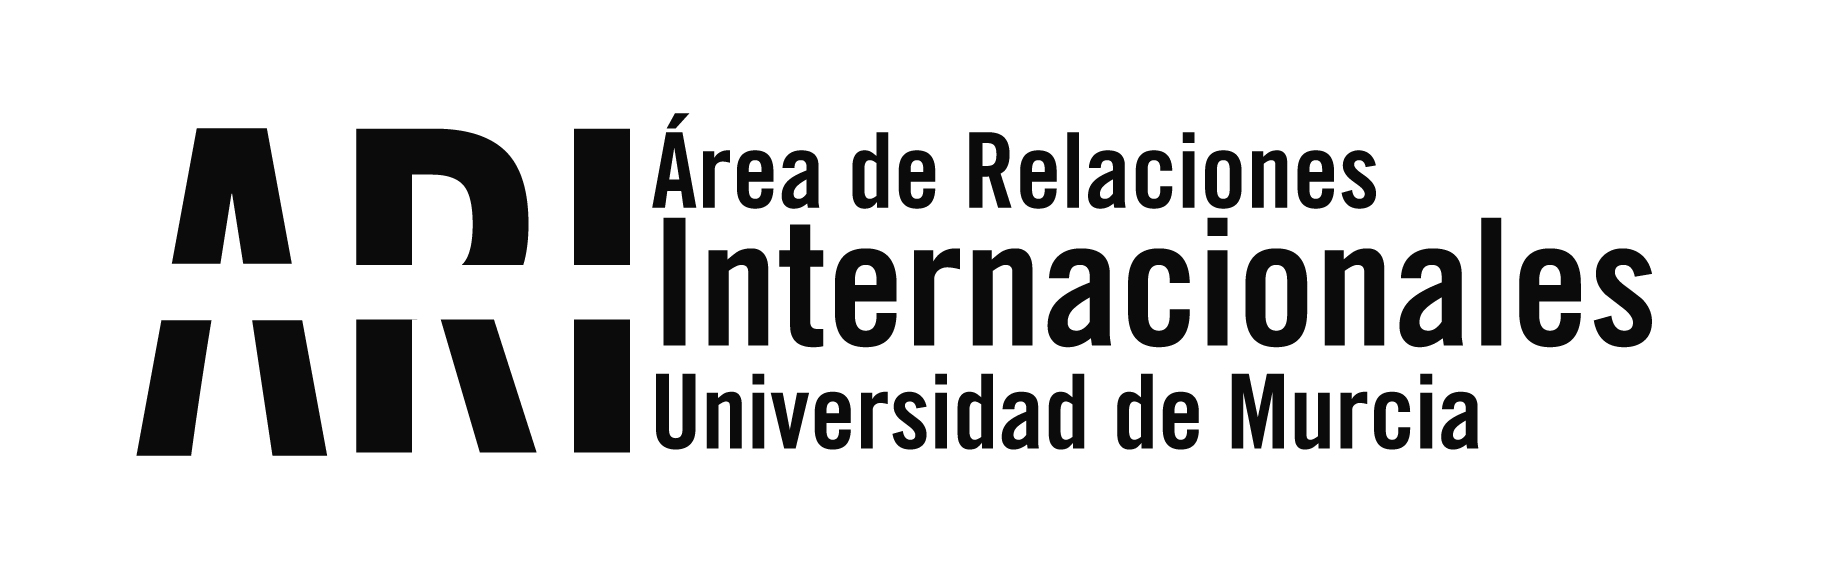 Boletín Informativo / Newsletter nº 22 del Vicerrectorado de Internacionalización de la UMU - 14 de enero de 2019 - Área de Relaciones Internacionales